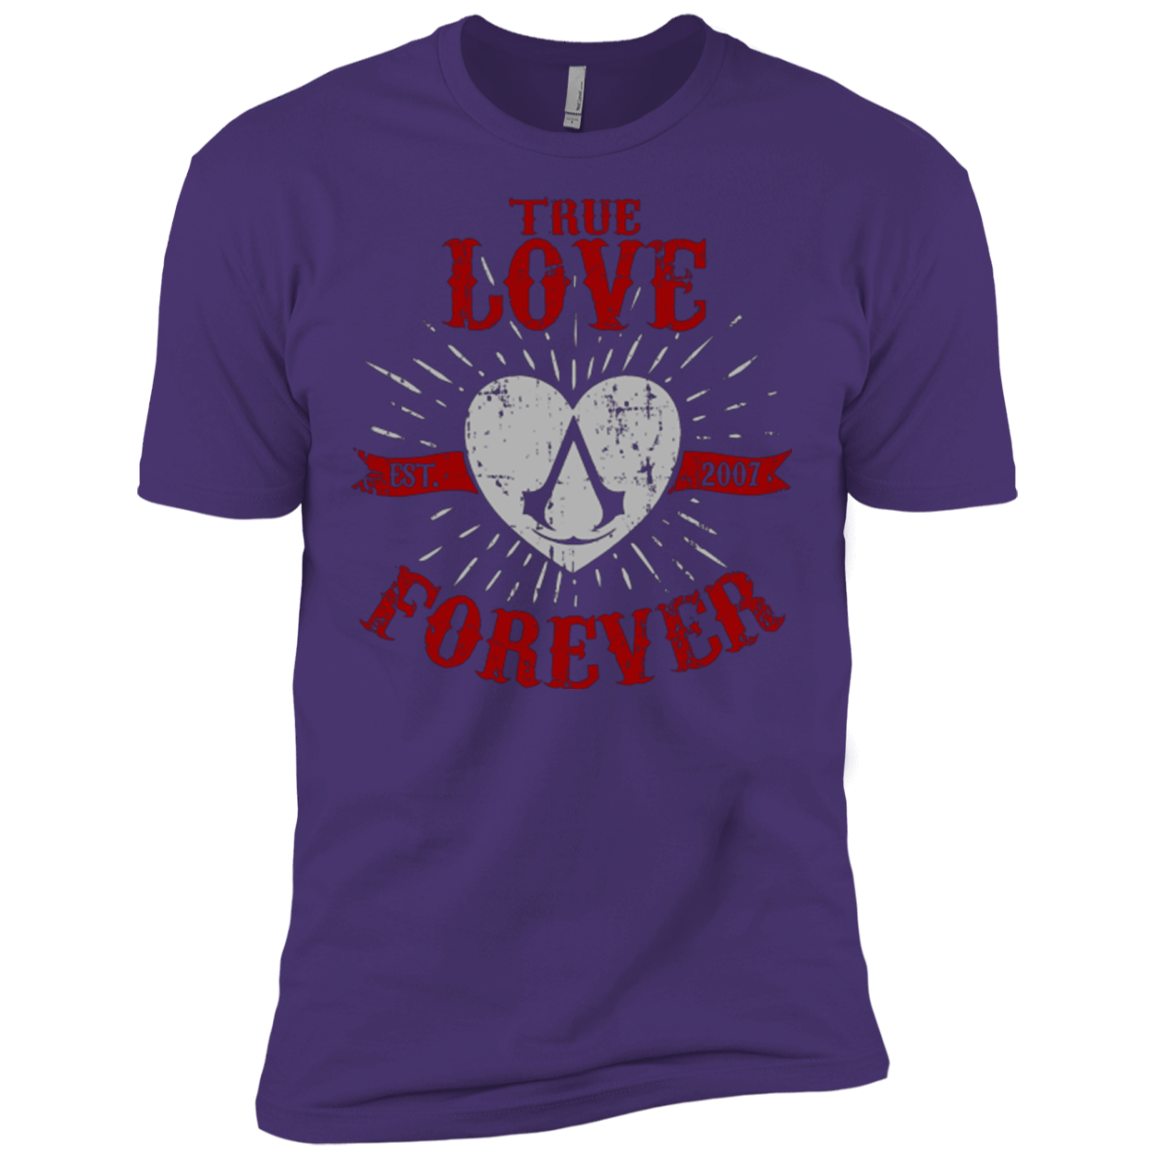 True Love Forever Assasin Men's Premium T-Shirt